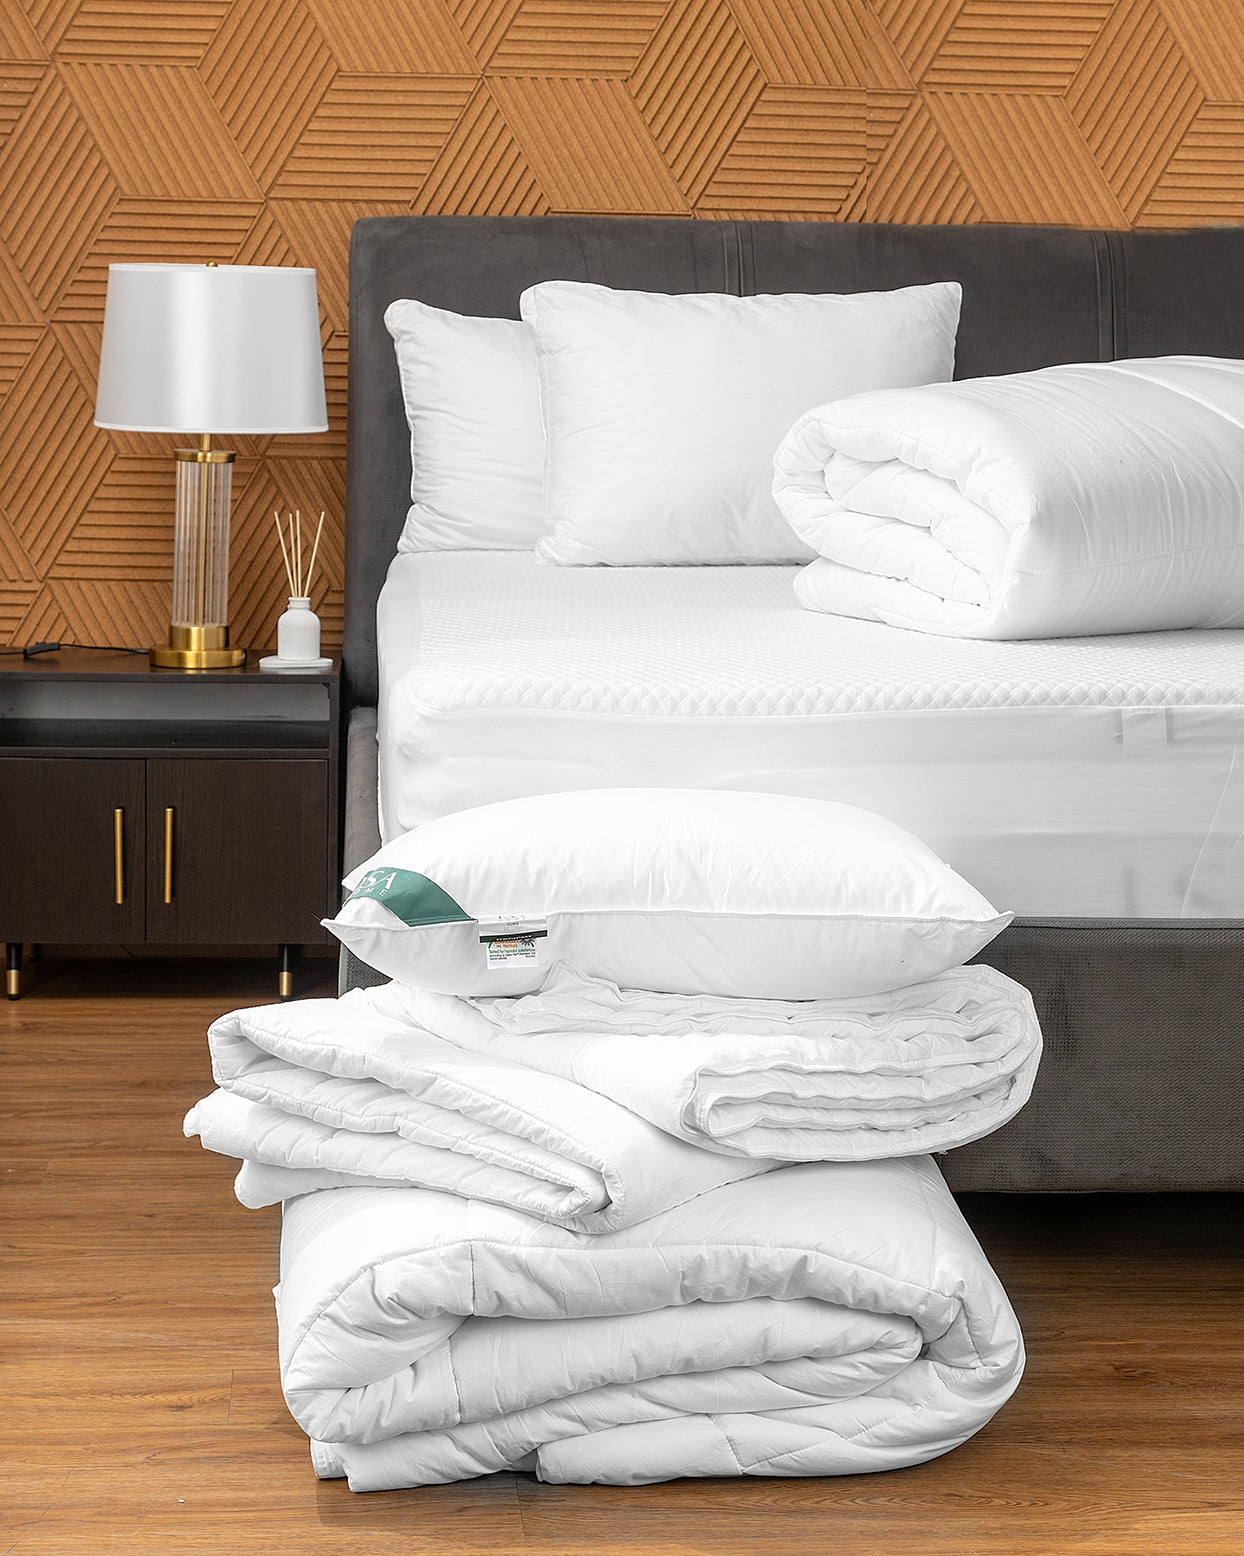 Duvet, Pillows, Bedsheets and Mattresses